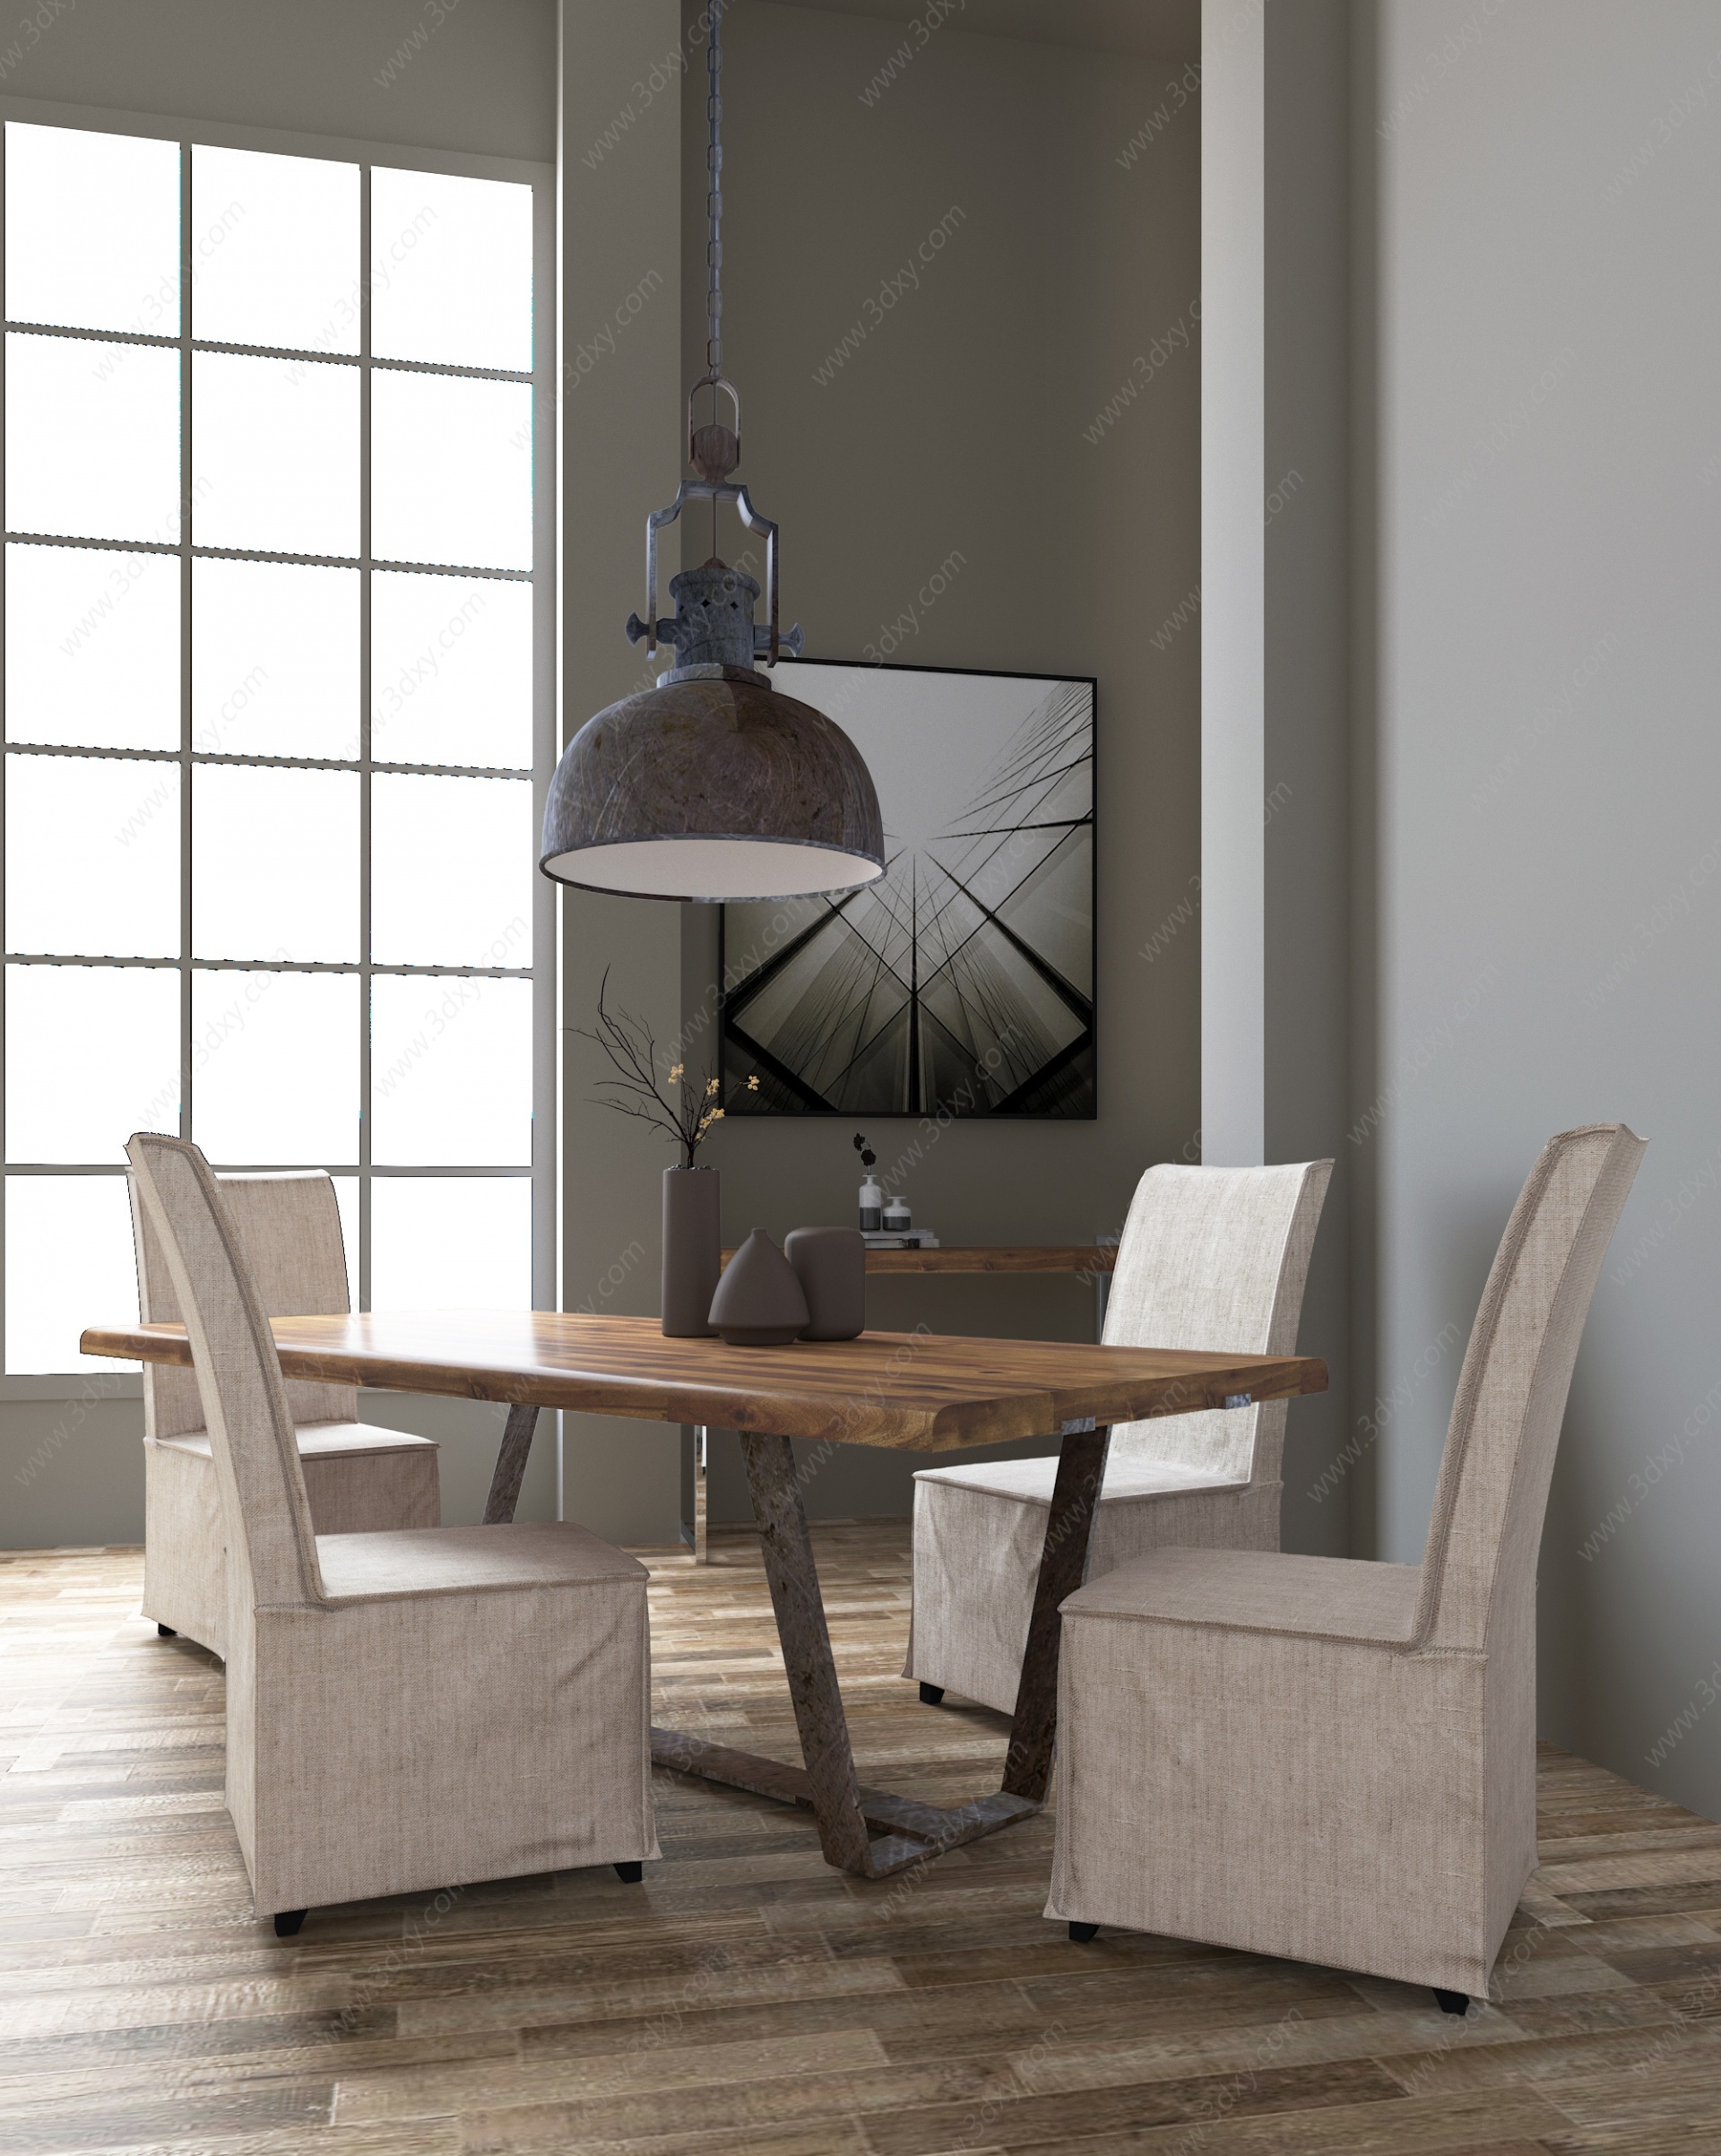 工业风餐厅椅子桌子3D模型